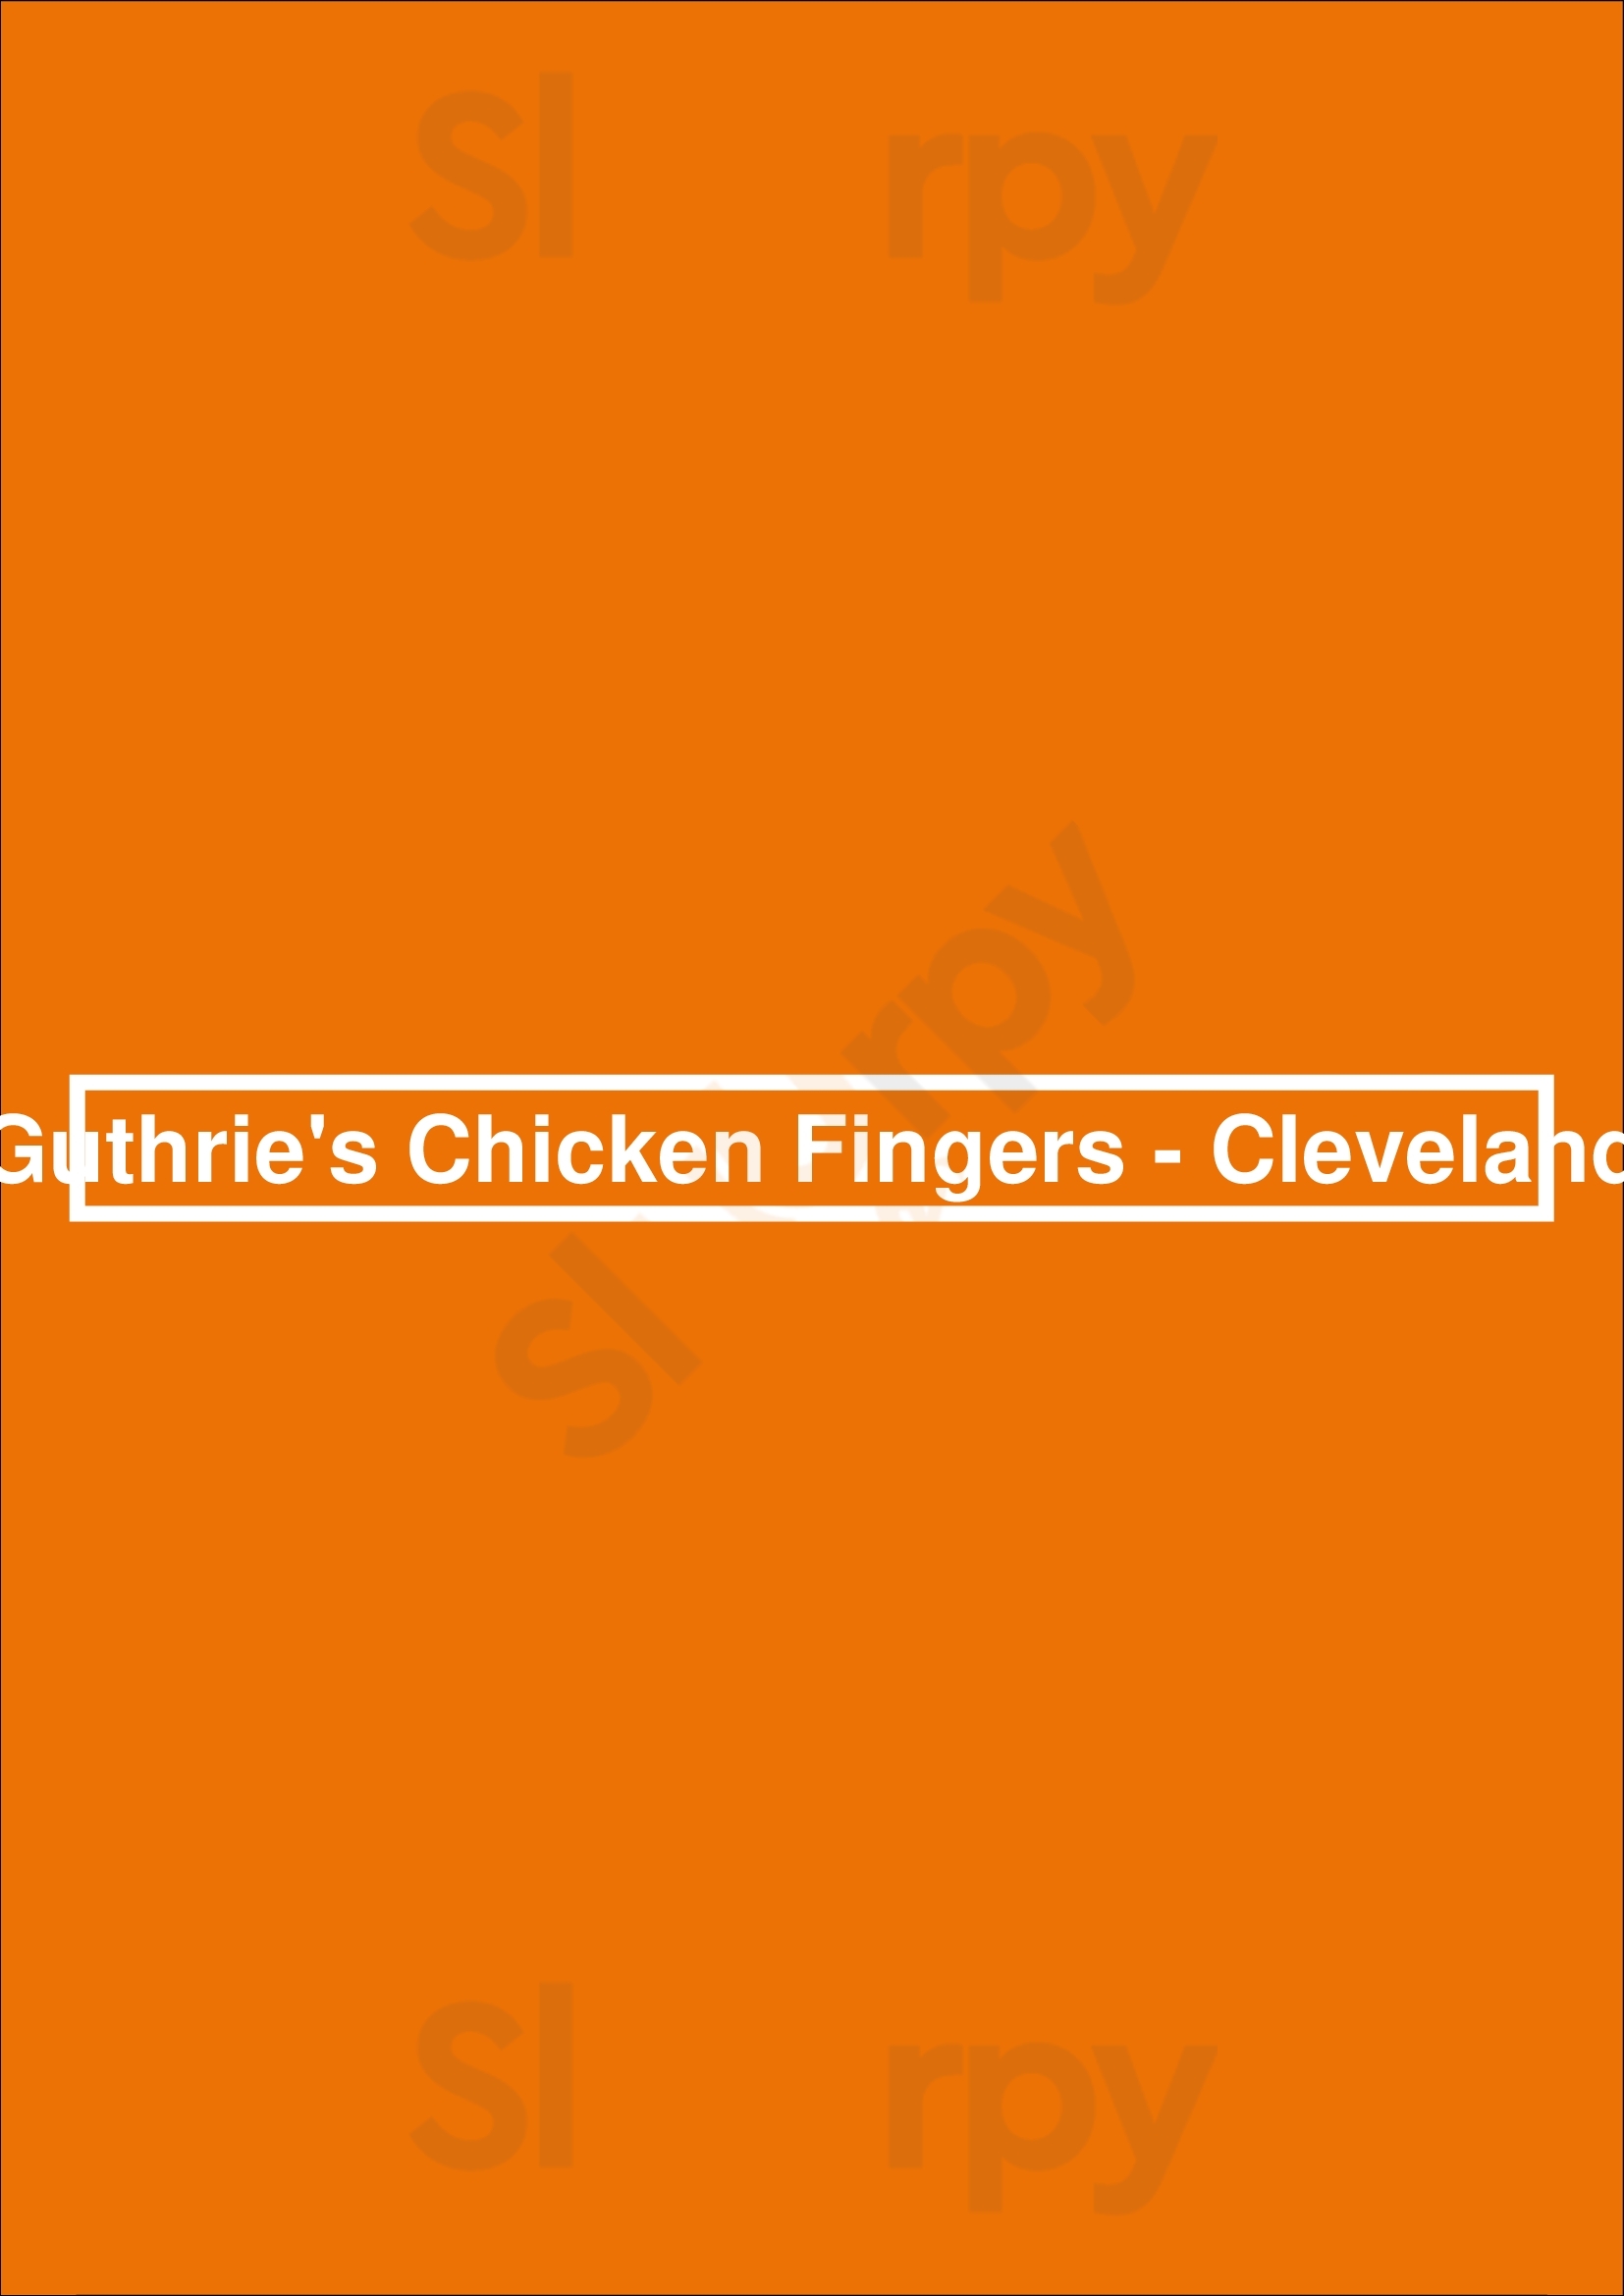 Guthrie's Chicken Fingers Cleveland Menu - 1